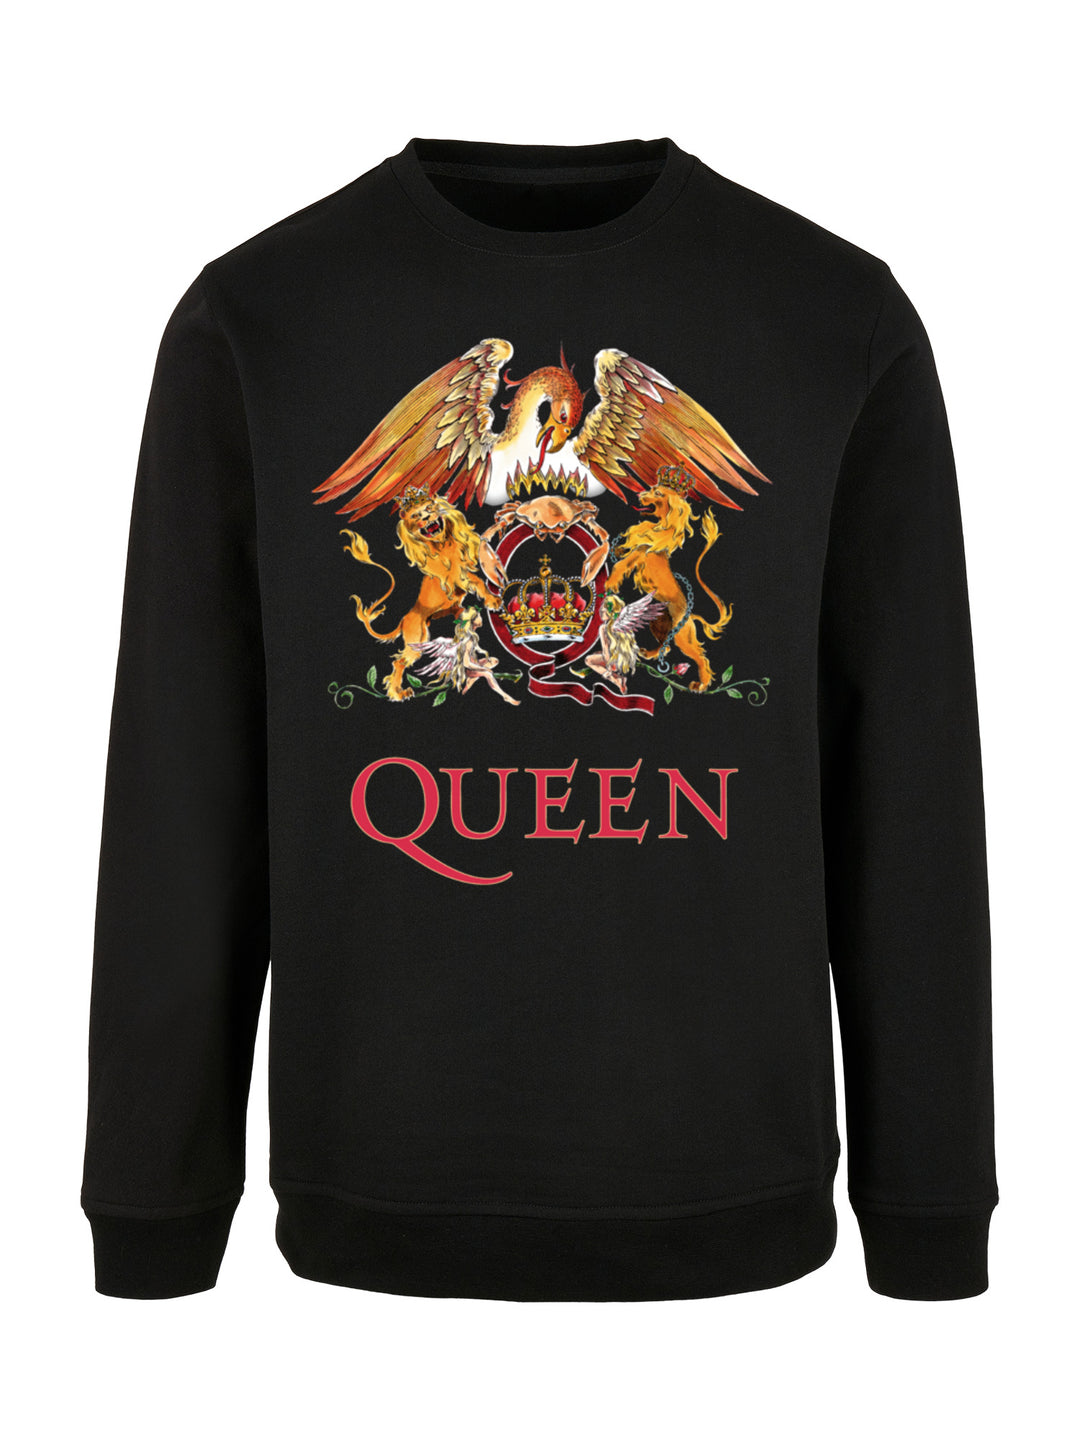 Queen Sweatshirt | Classic Crest Herren | Longsleeve Sweater